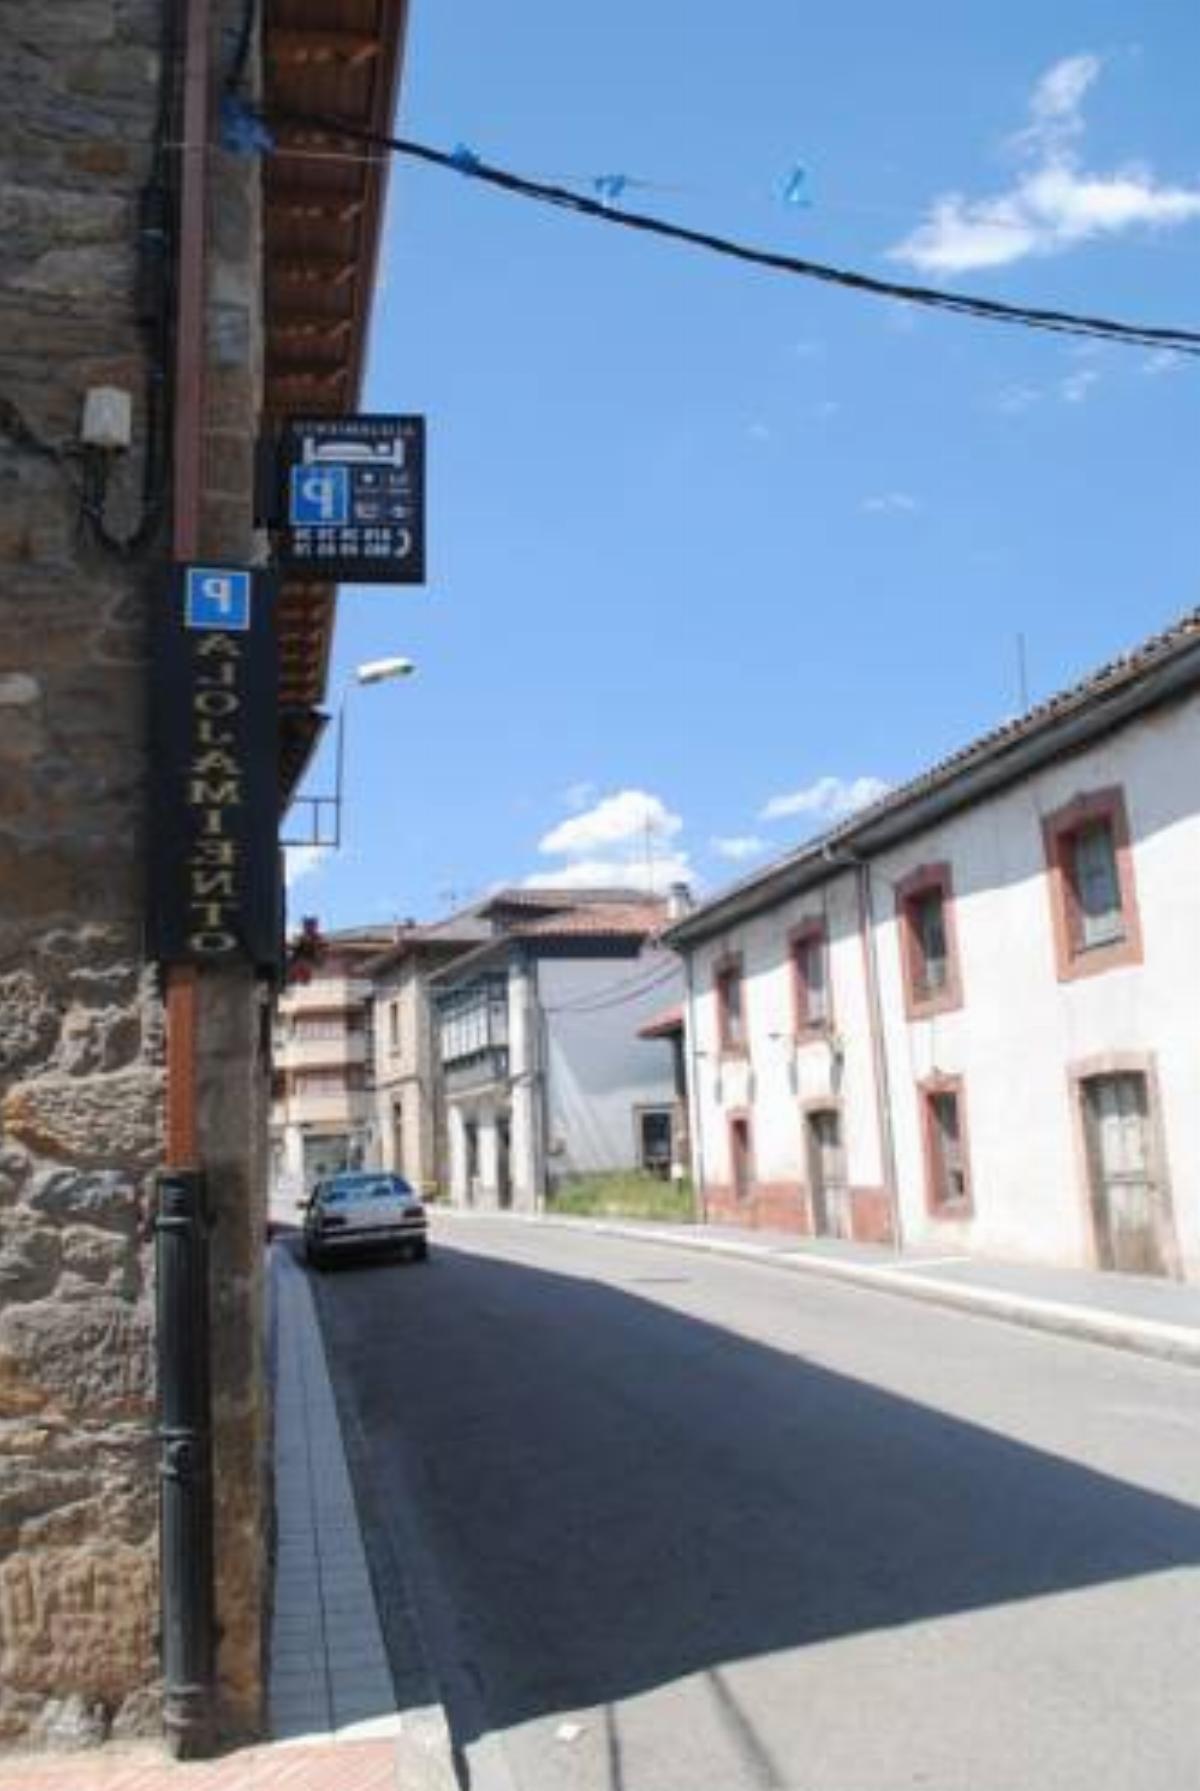 Pension Casa del Abad Hotel Campomanes Spain